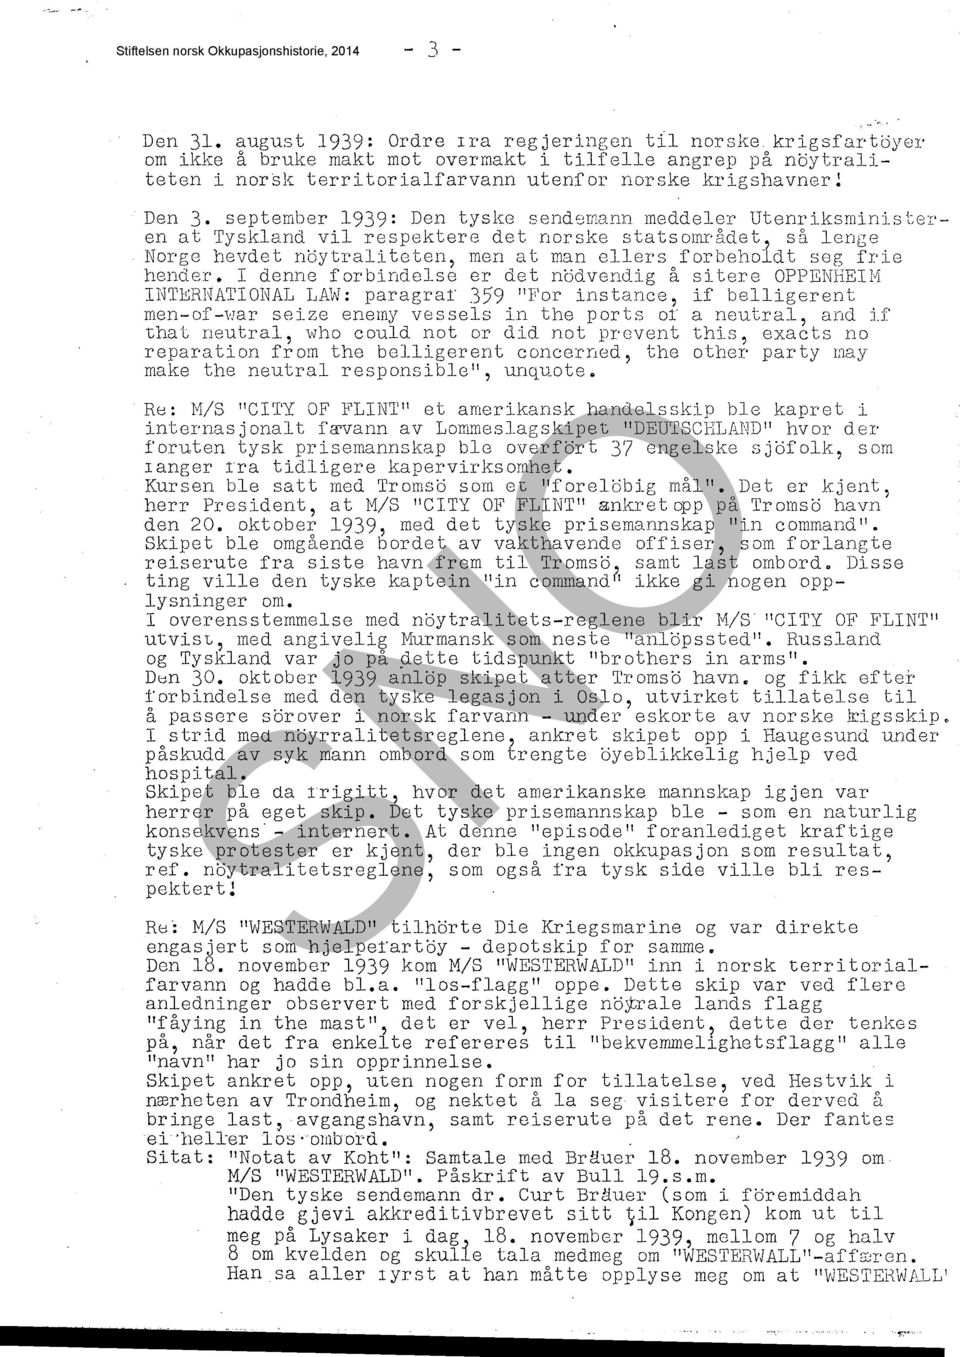 september 1939: Den tyske sendemann meddeler Utenriksministeren at Tyskland vii respektere det norske statsmnrådet, så lenge Norge hevdet nöytraliteten, men at man ellers forbeholdt seg frie hender.